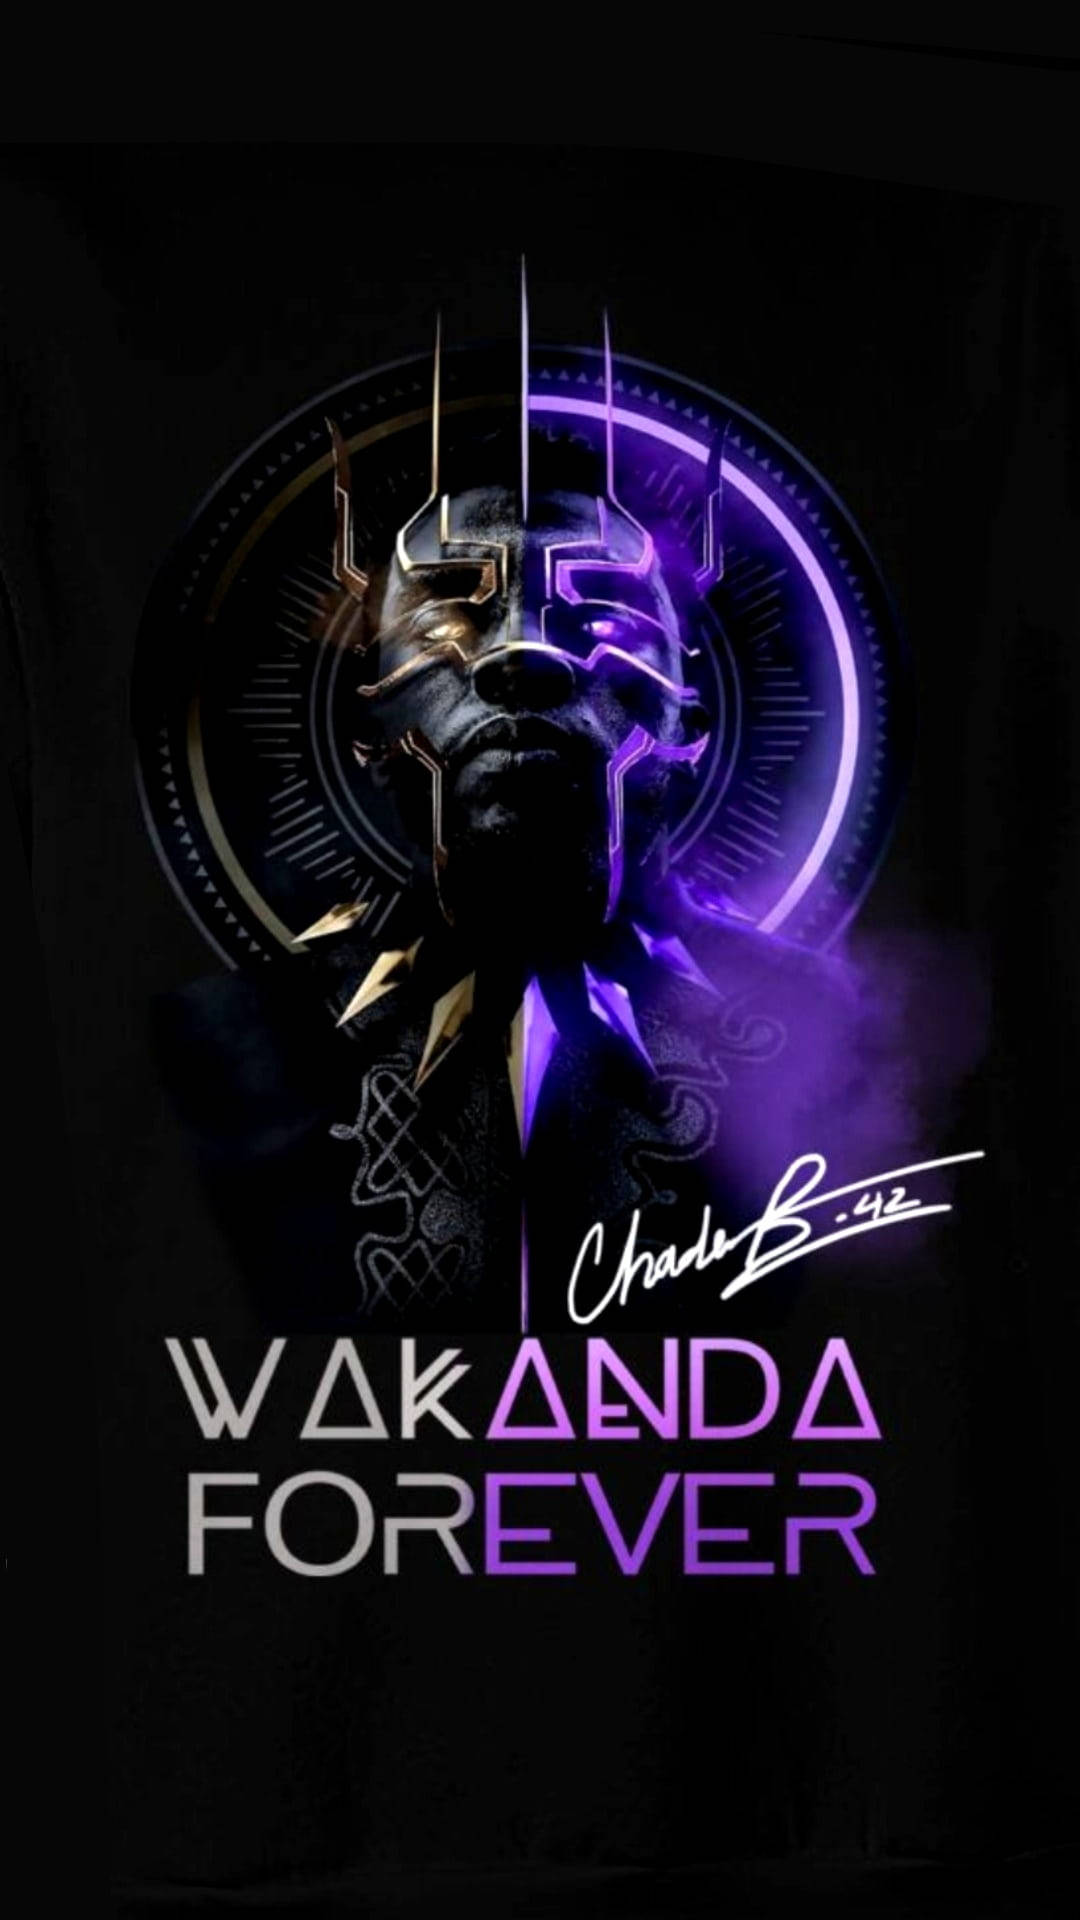 Wakanda Background Wallpaper